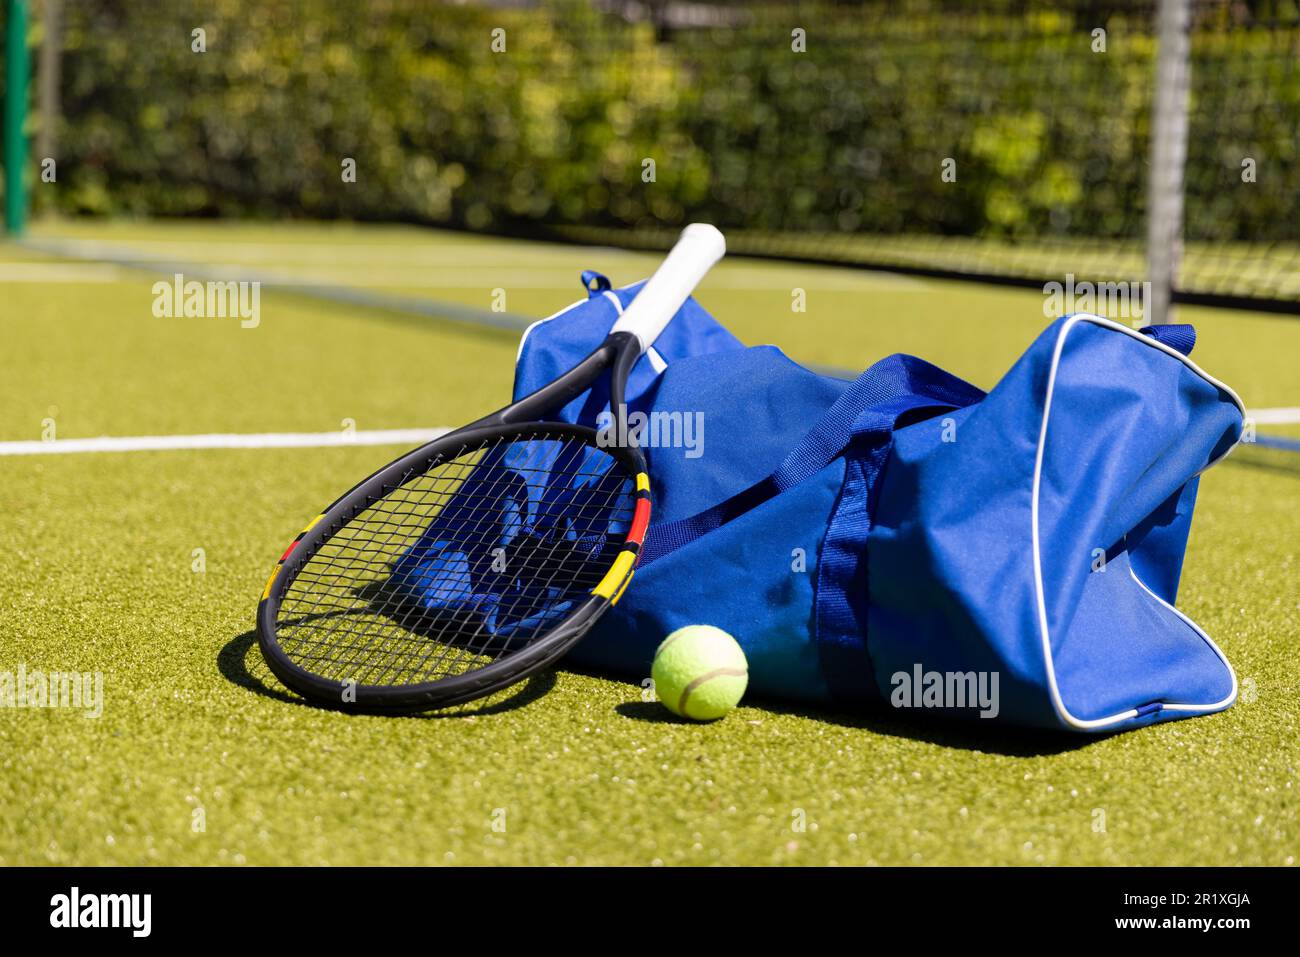 Raquette de tennis, ballon et sac de sport sur un court de tennis en gazon extérieur ensoleillé Banque D'Images